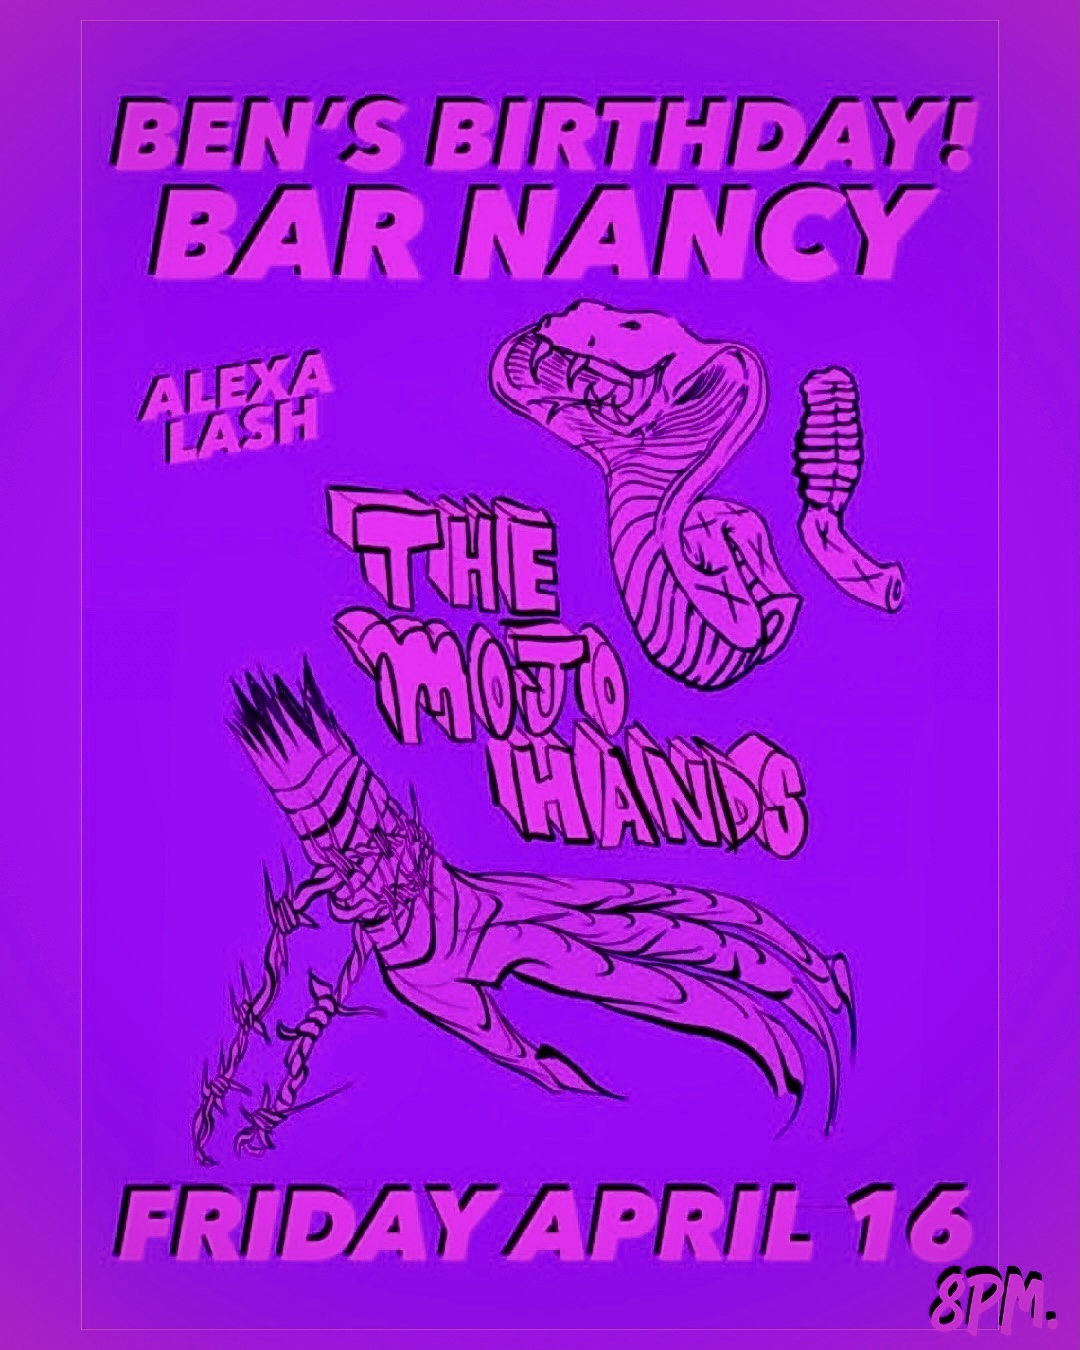 Ben's Birthday! at Bar Nancy with Alexa Lash - April 16th at 8pm